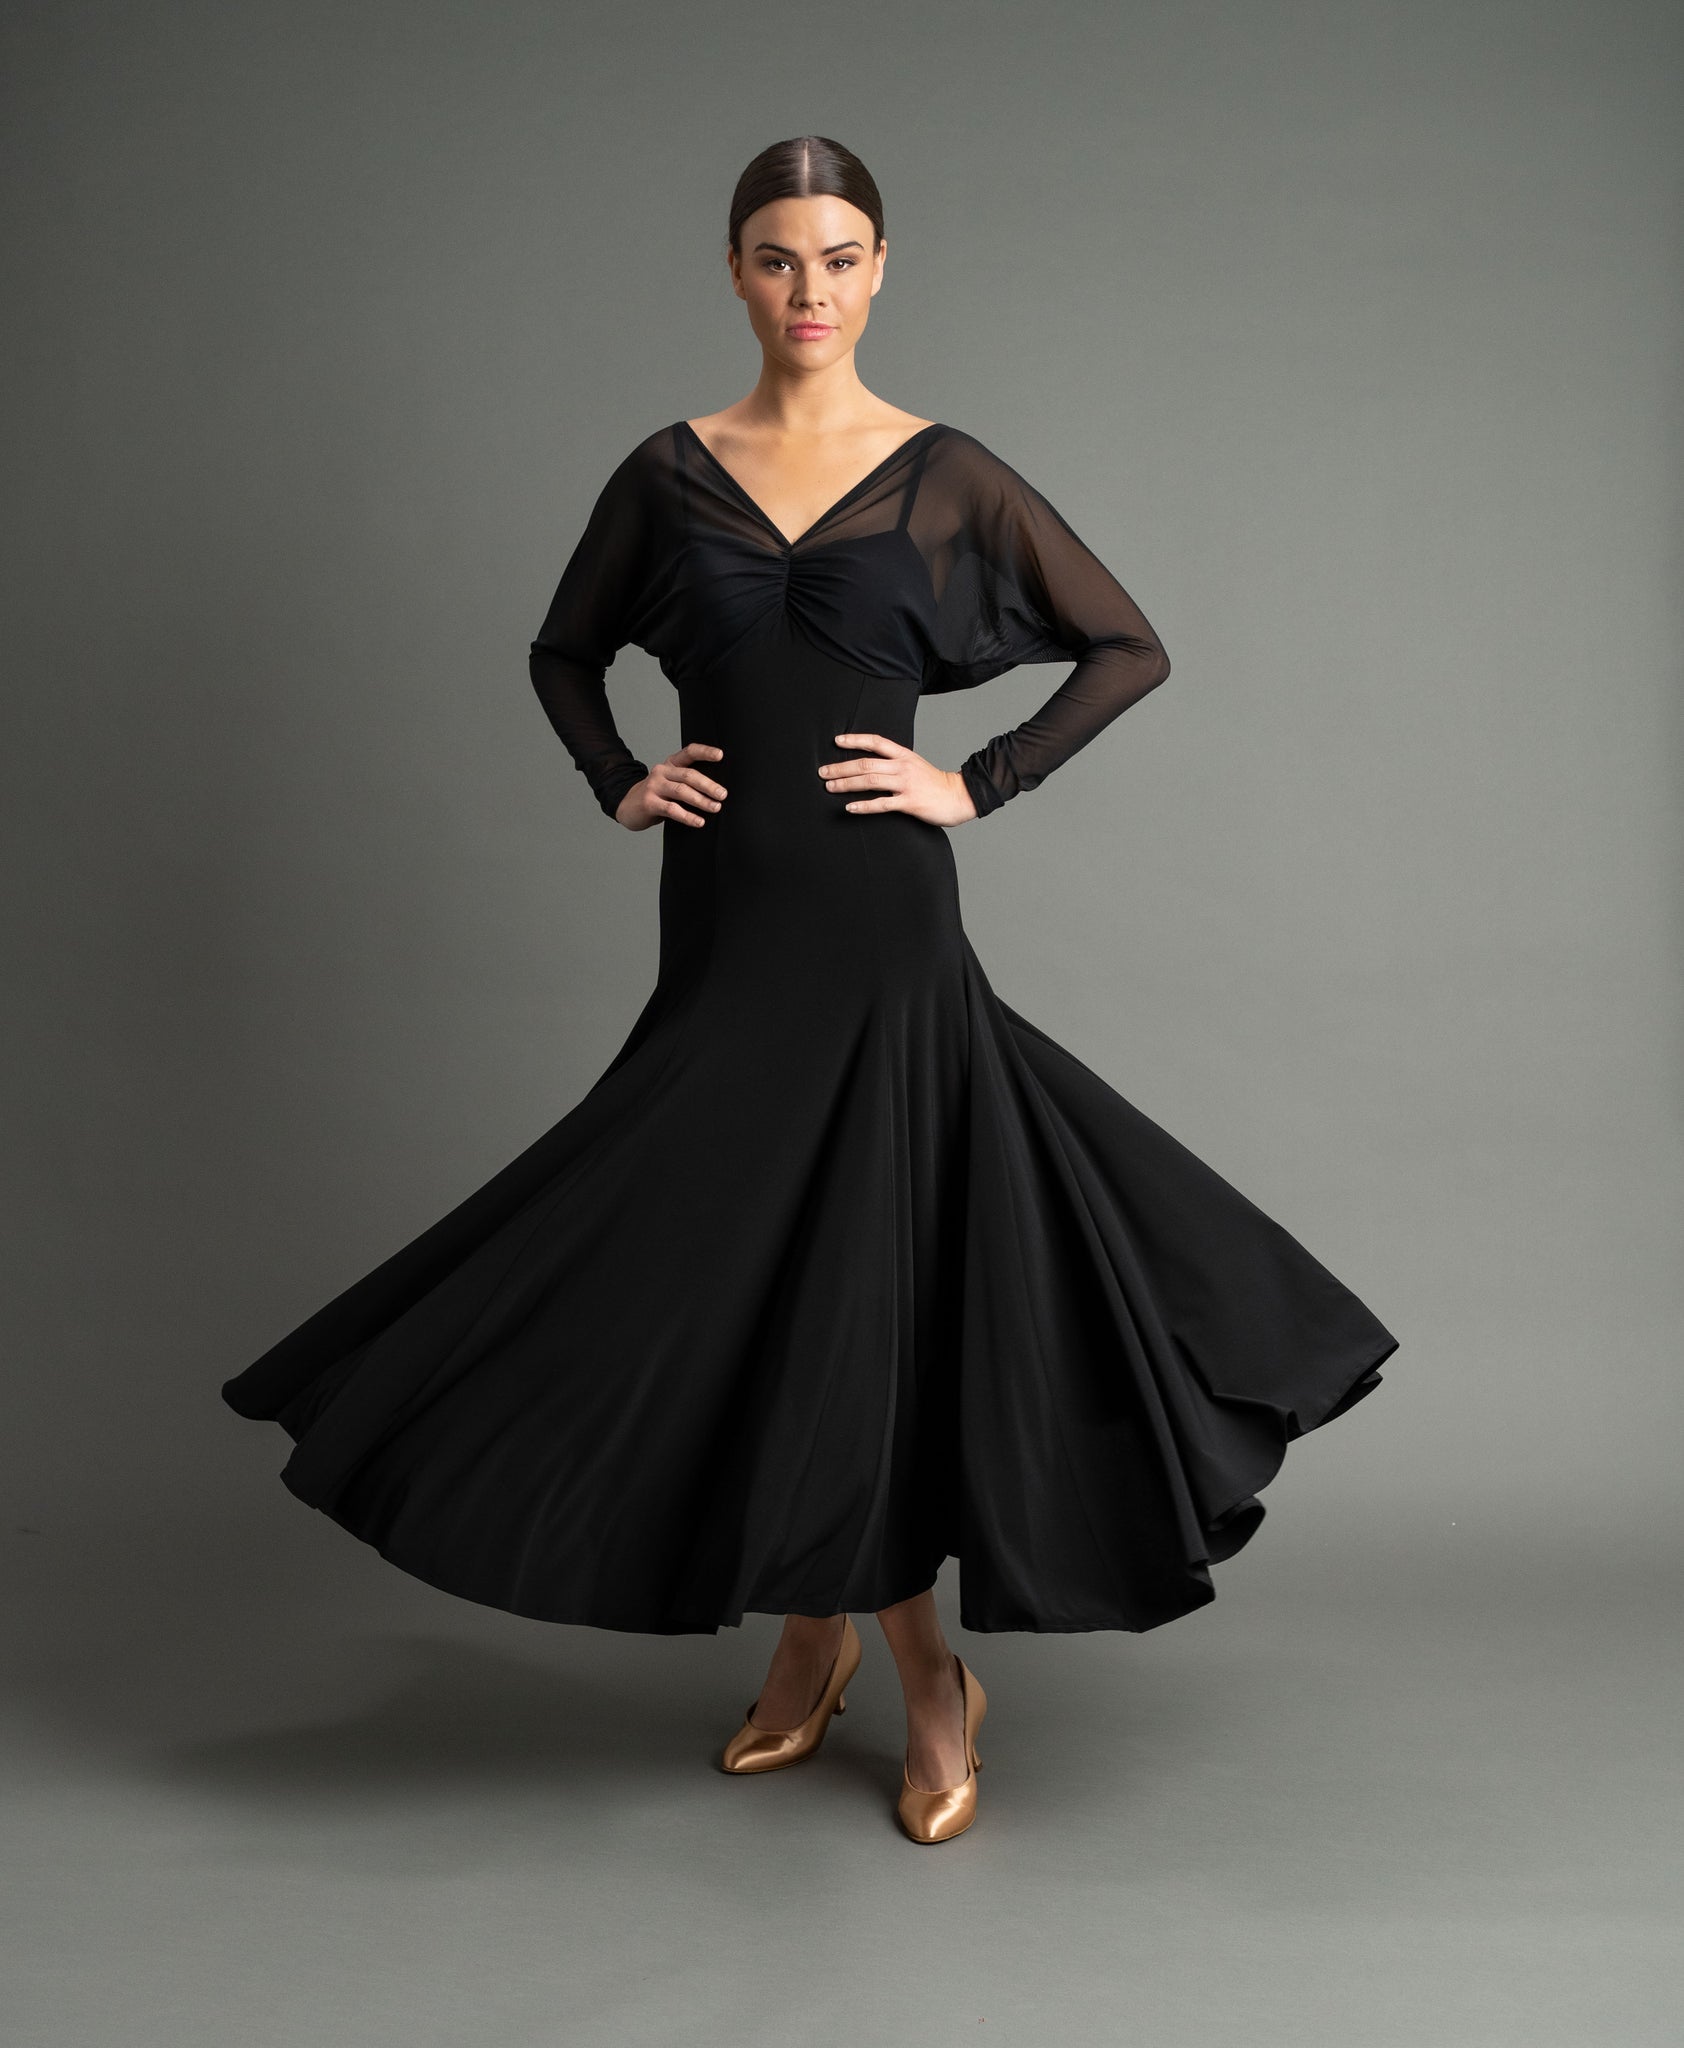 Adult Ballroom Dancewear for sale | eBay | Dance dresses, Smooth dance  dresses, Ballroom dress